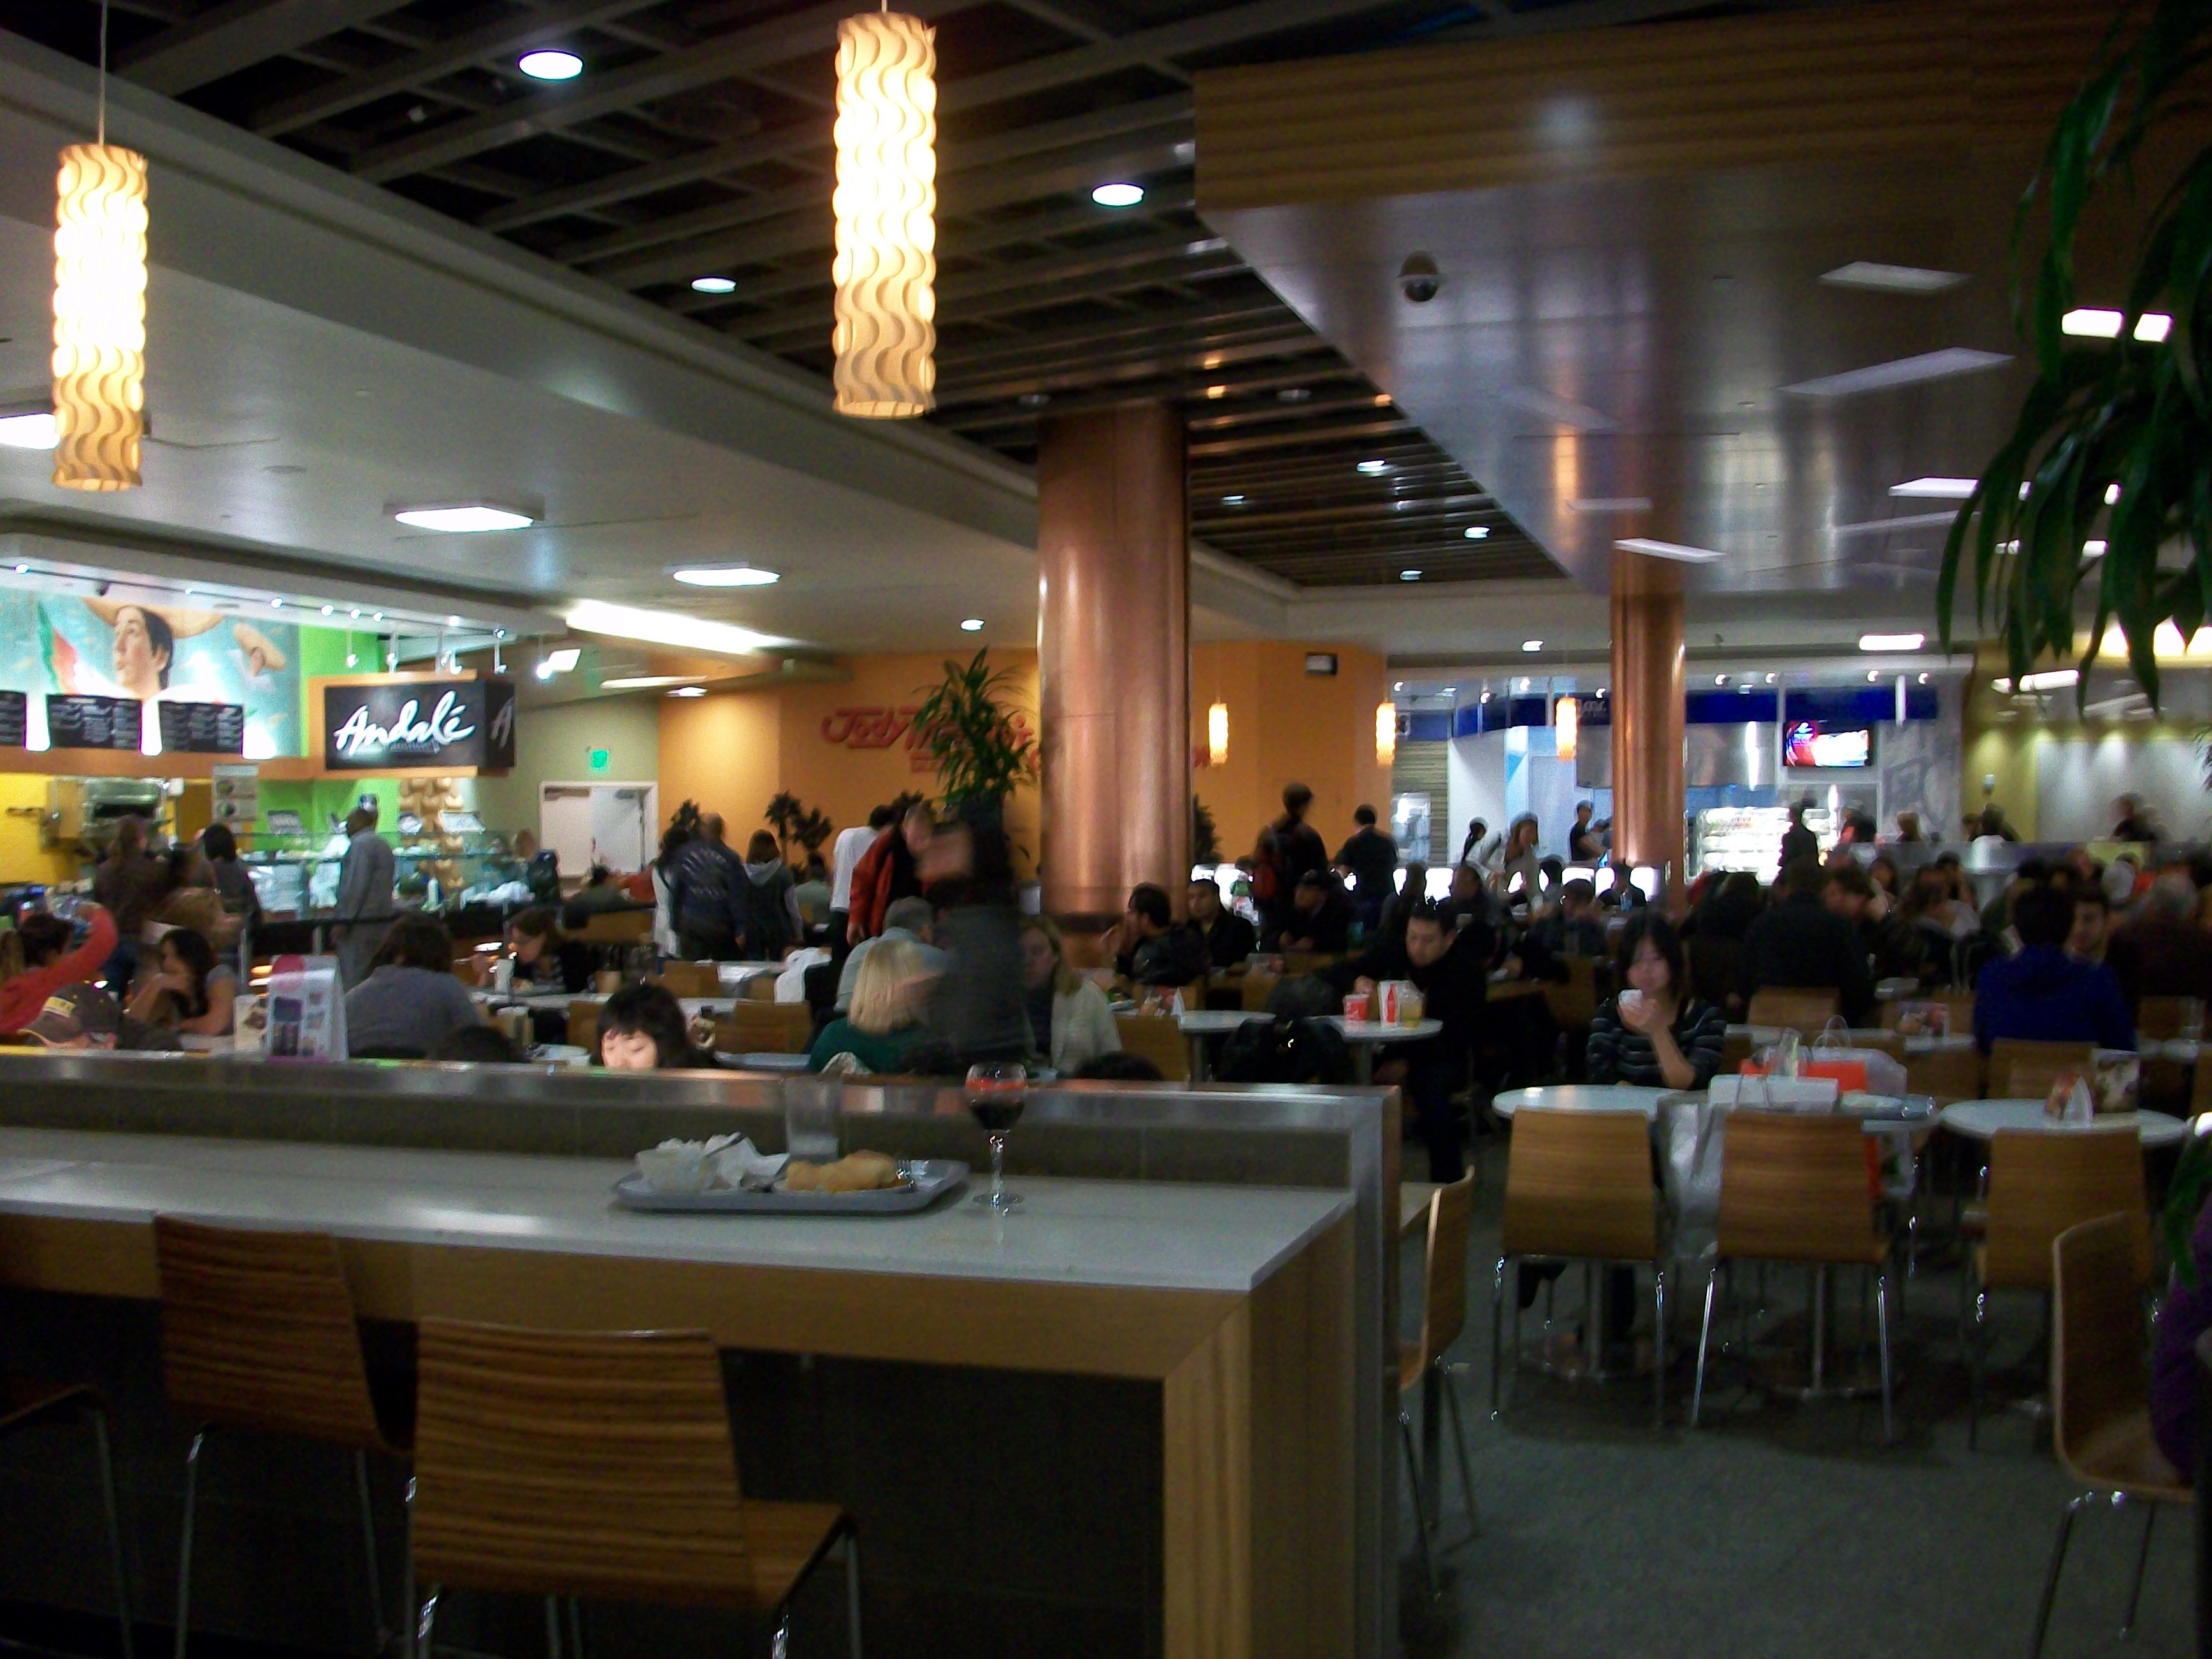 westfield london food court